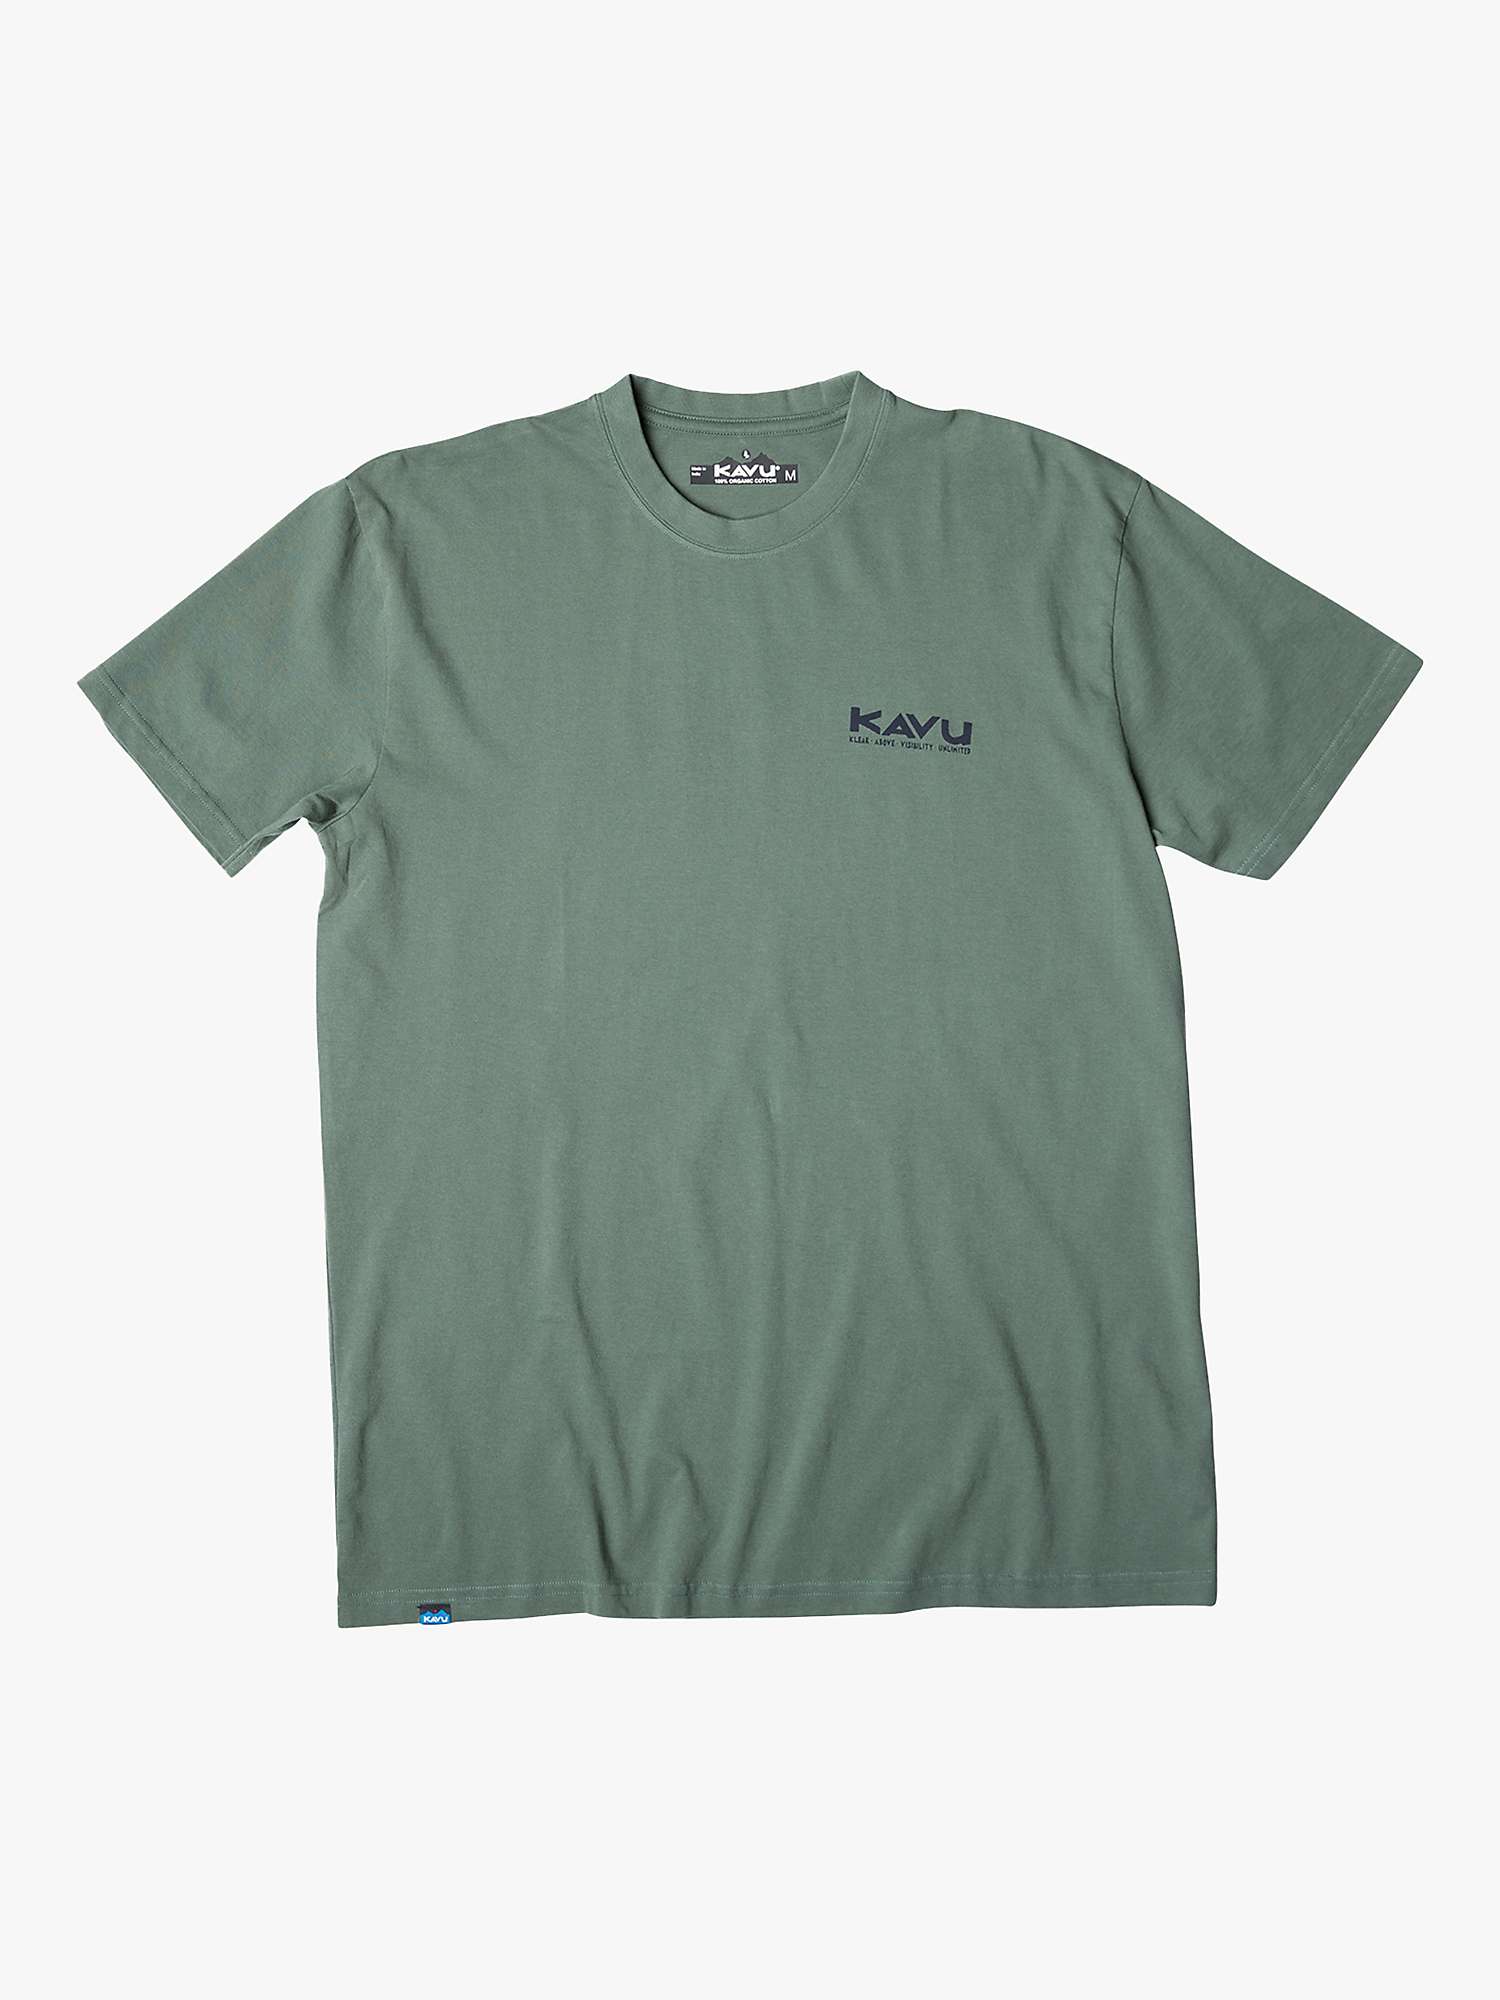 Buy KAVU Get It Short Sleeve T-Shirt, Green Online at johnlewis.com